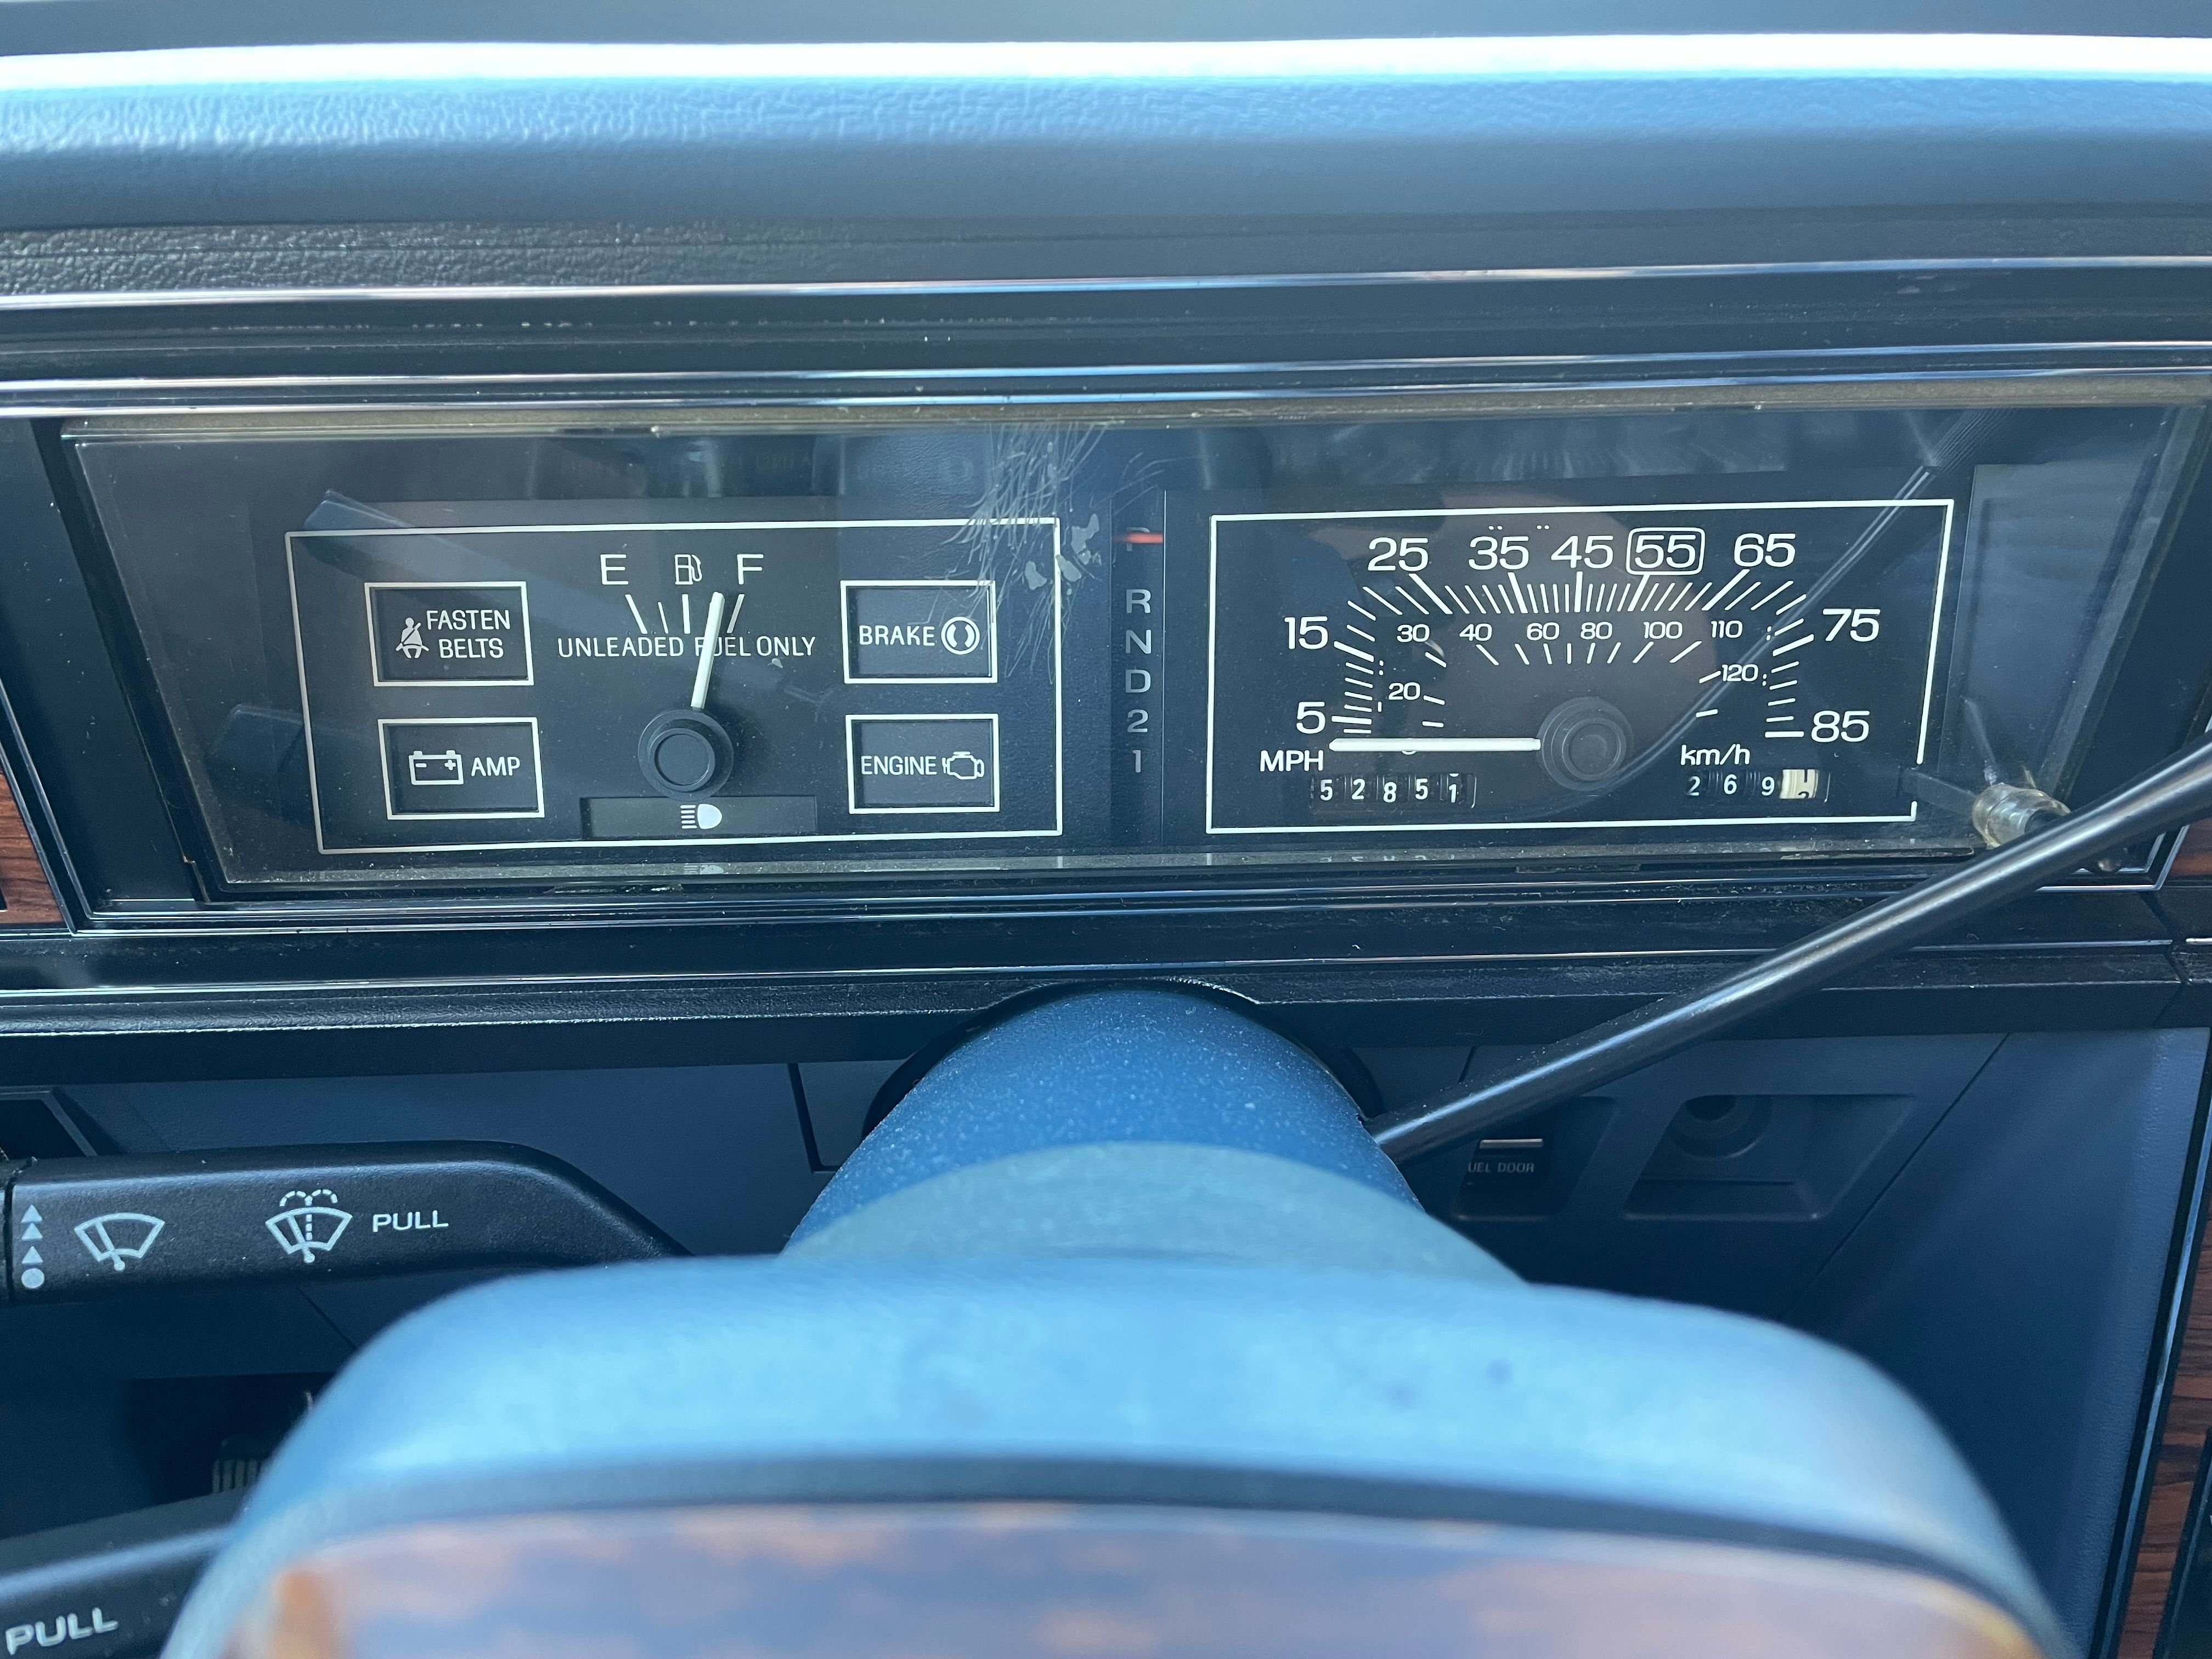 1985 Ford LTD